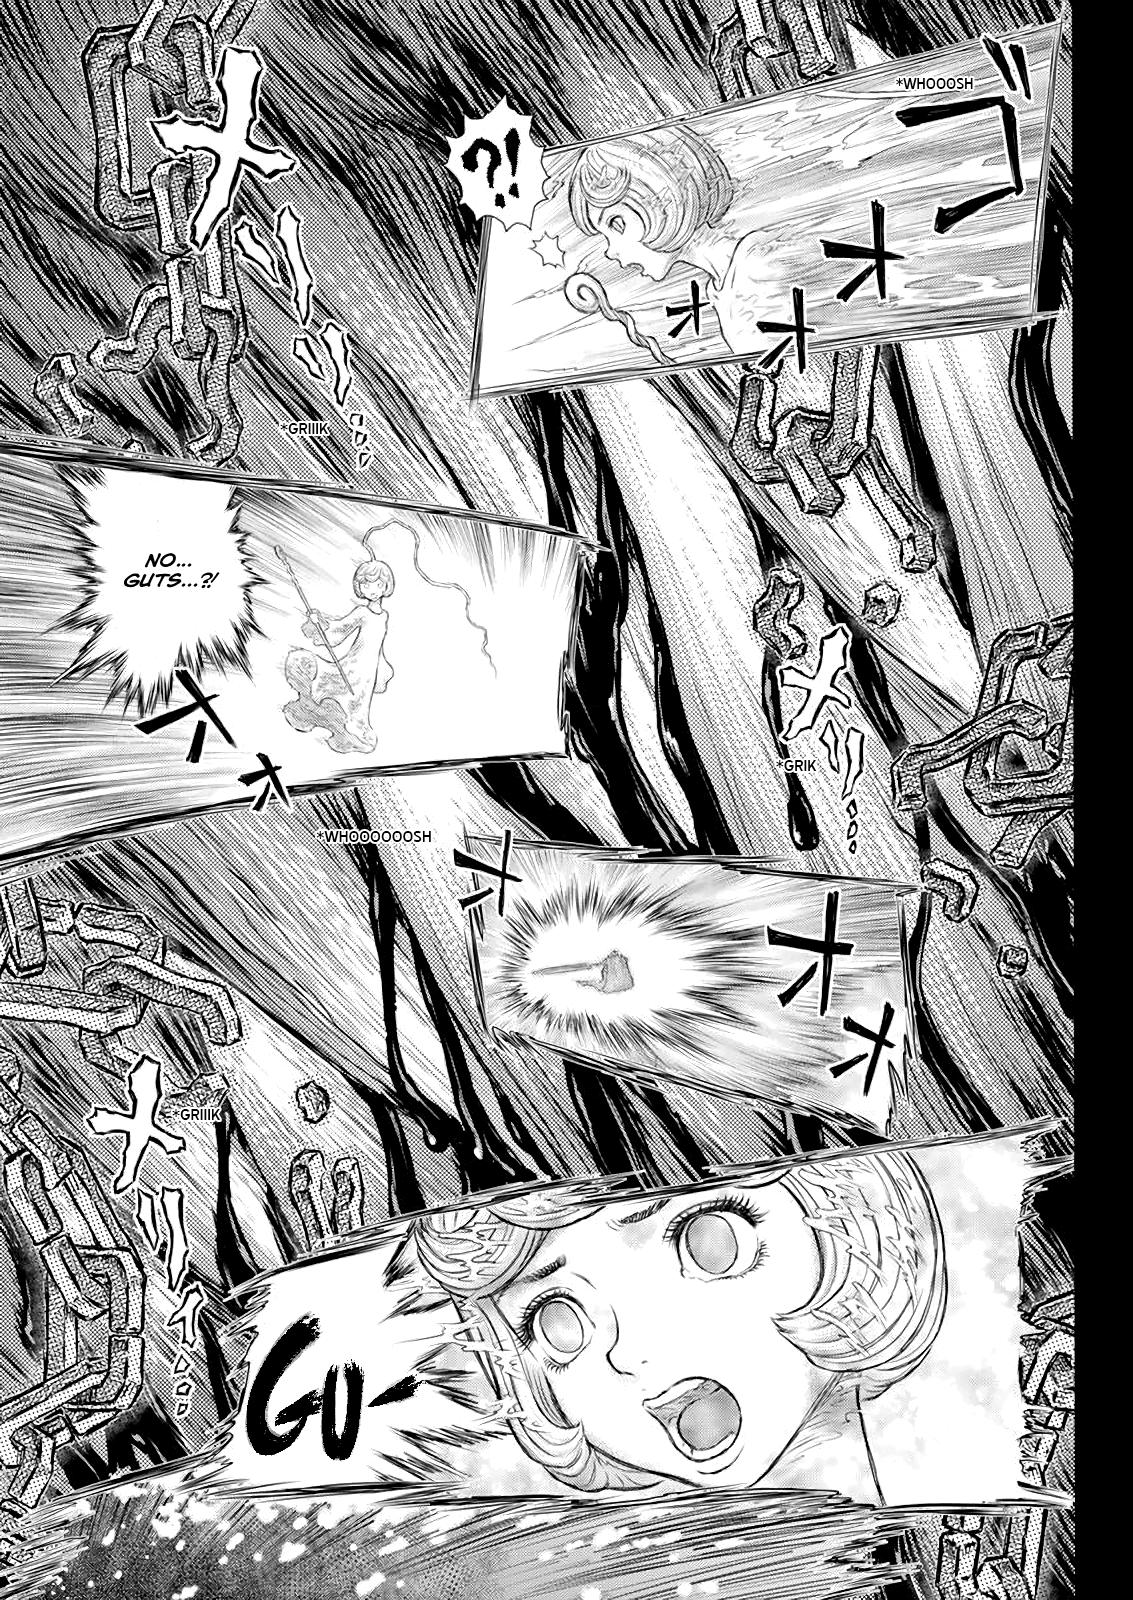 Berserk Manga Chapter 371 image 06